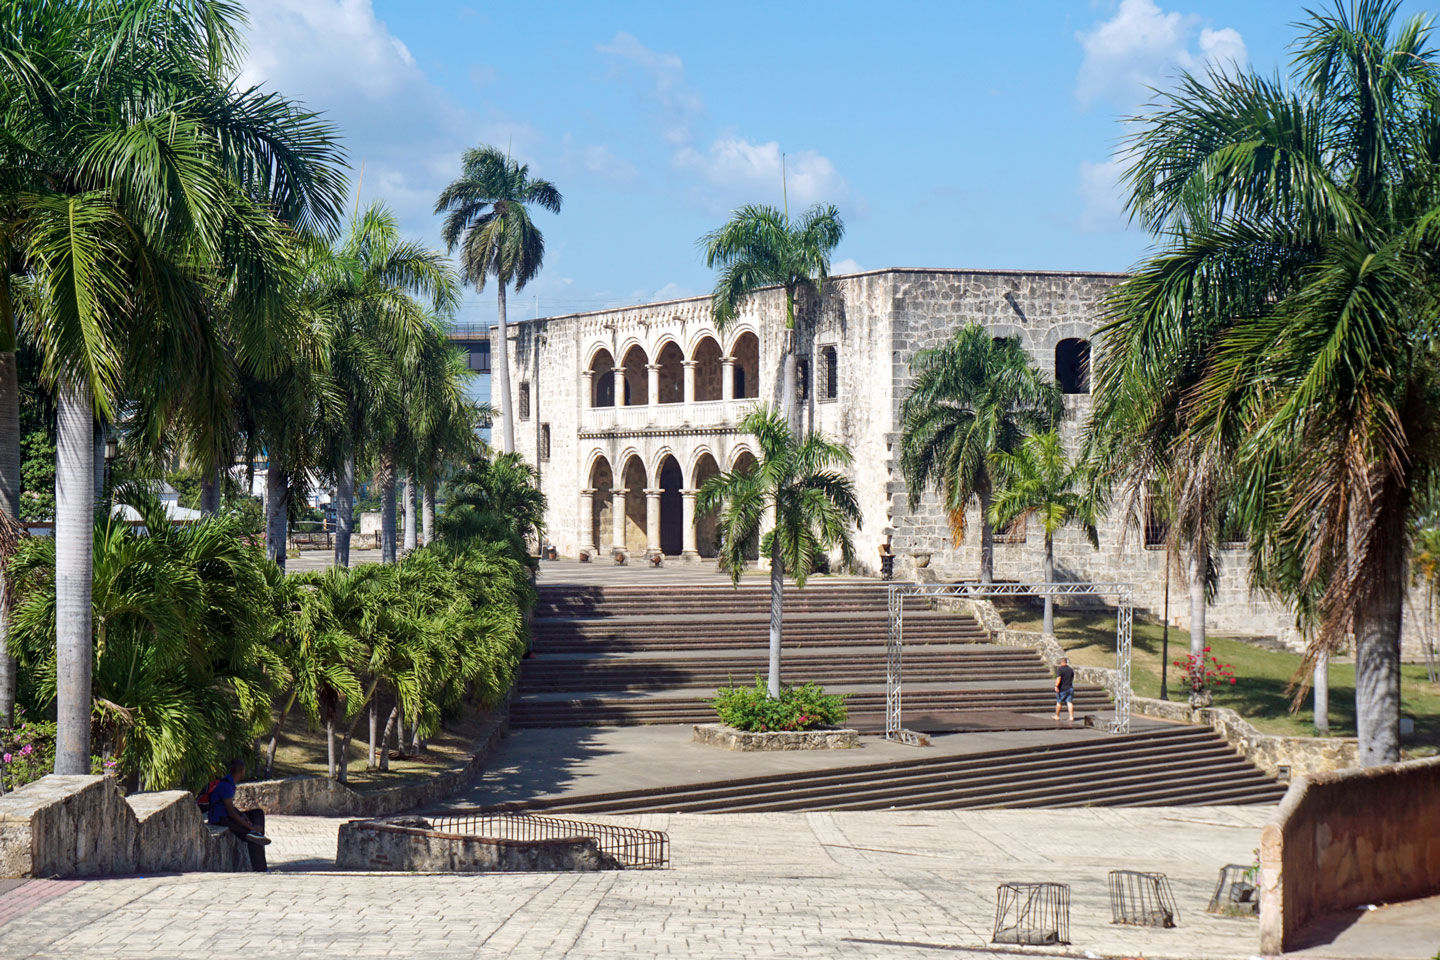 Facade of the Alcázar de Colón in Santo Domingo, seen from the south.